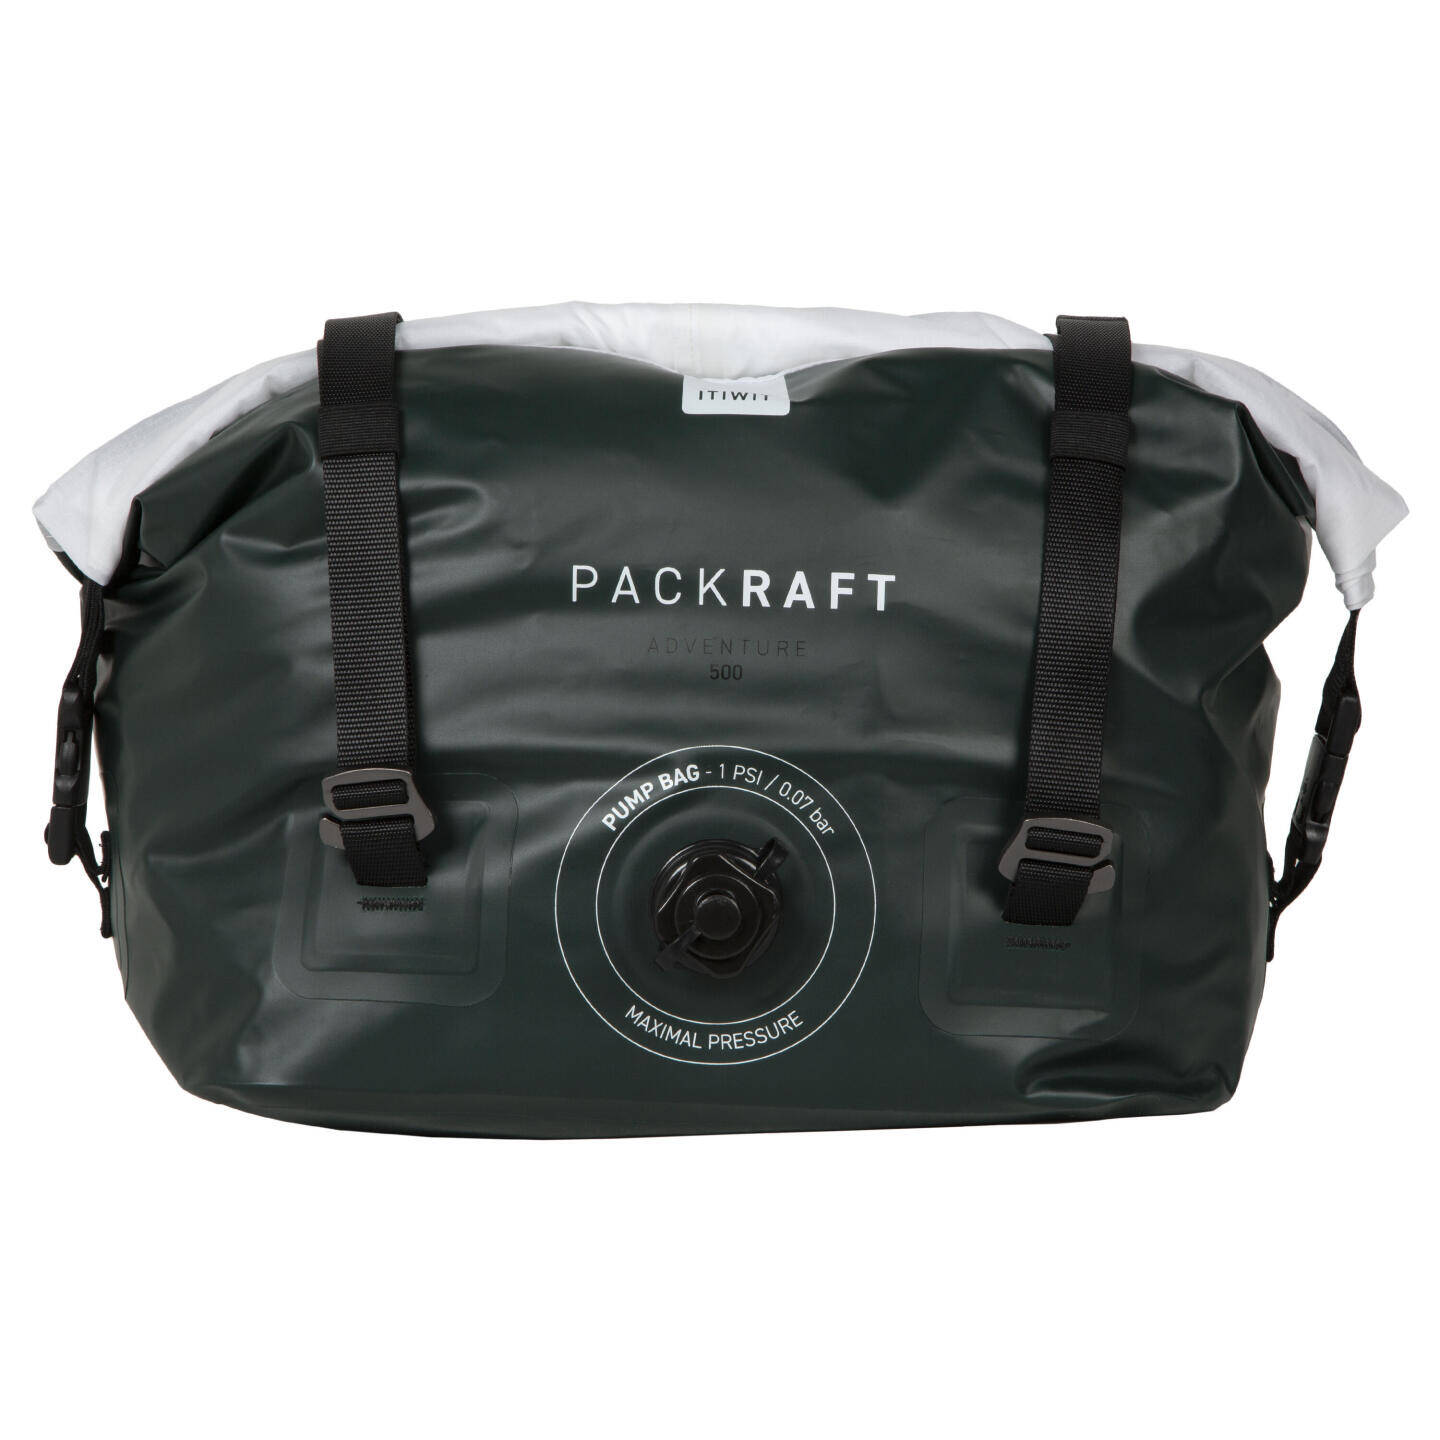 DECATHLON ITIWIT Packraft 500 Tasche